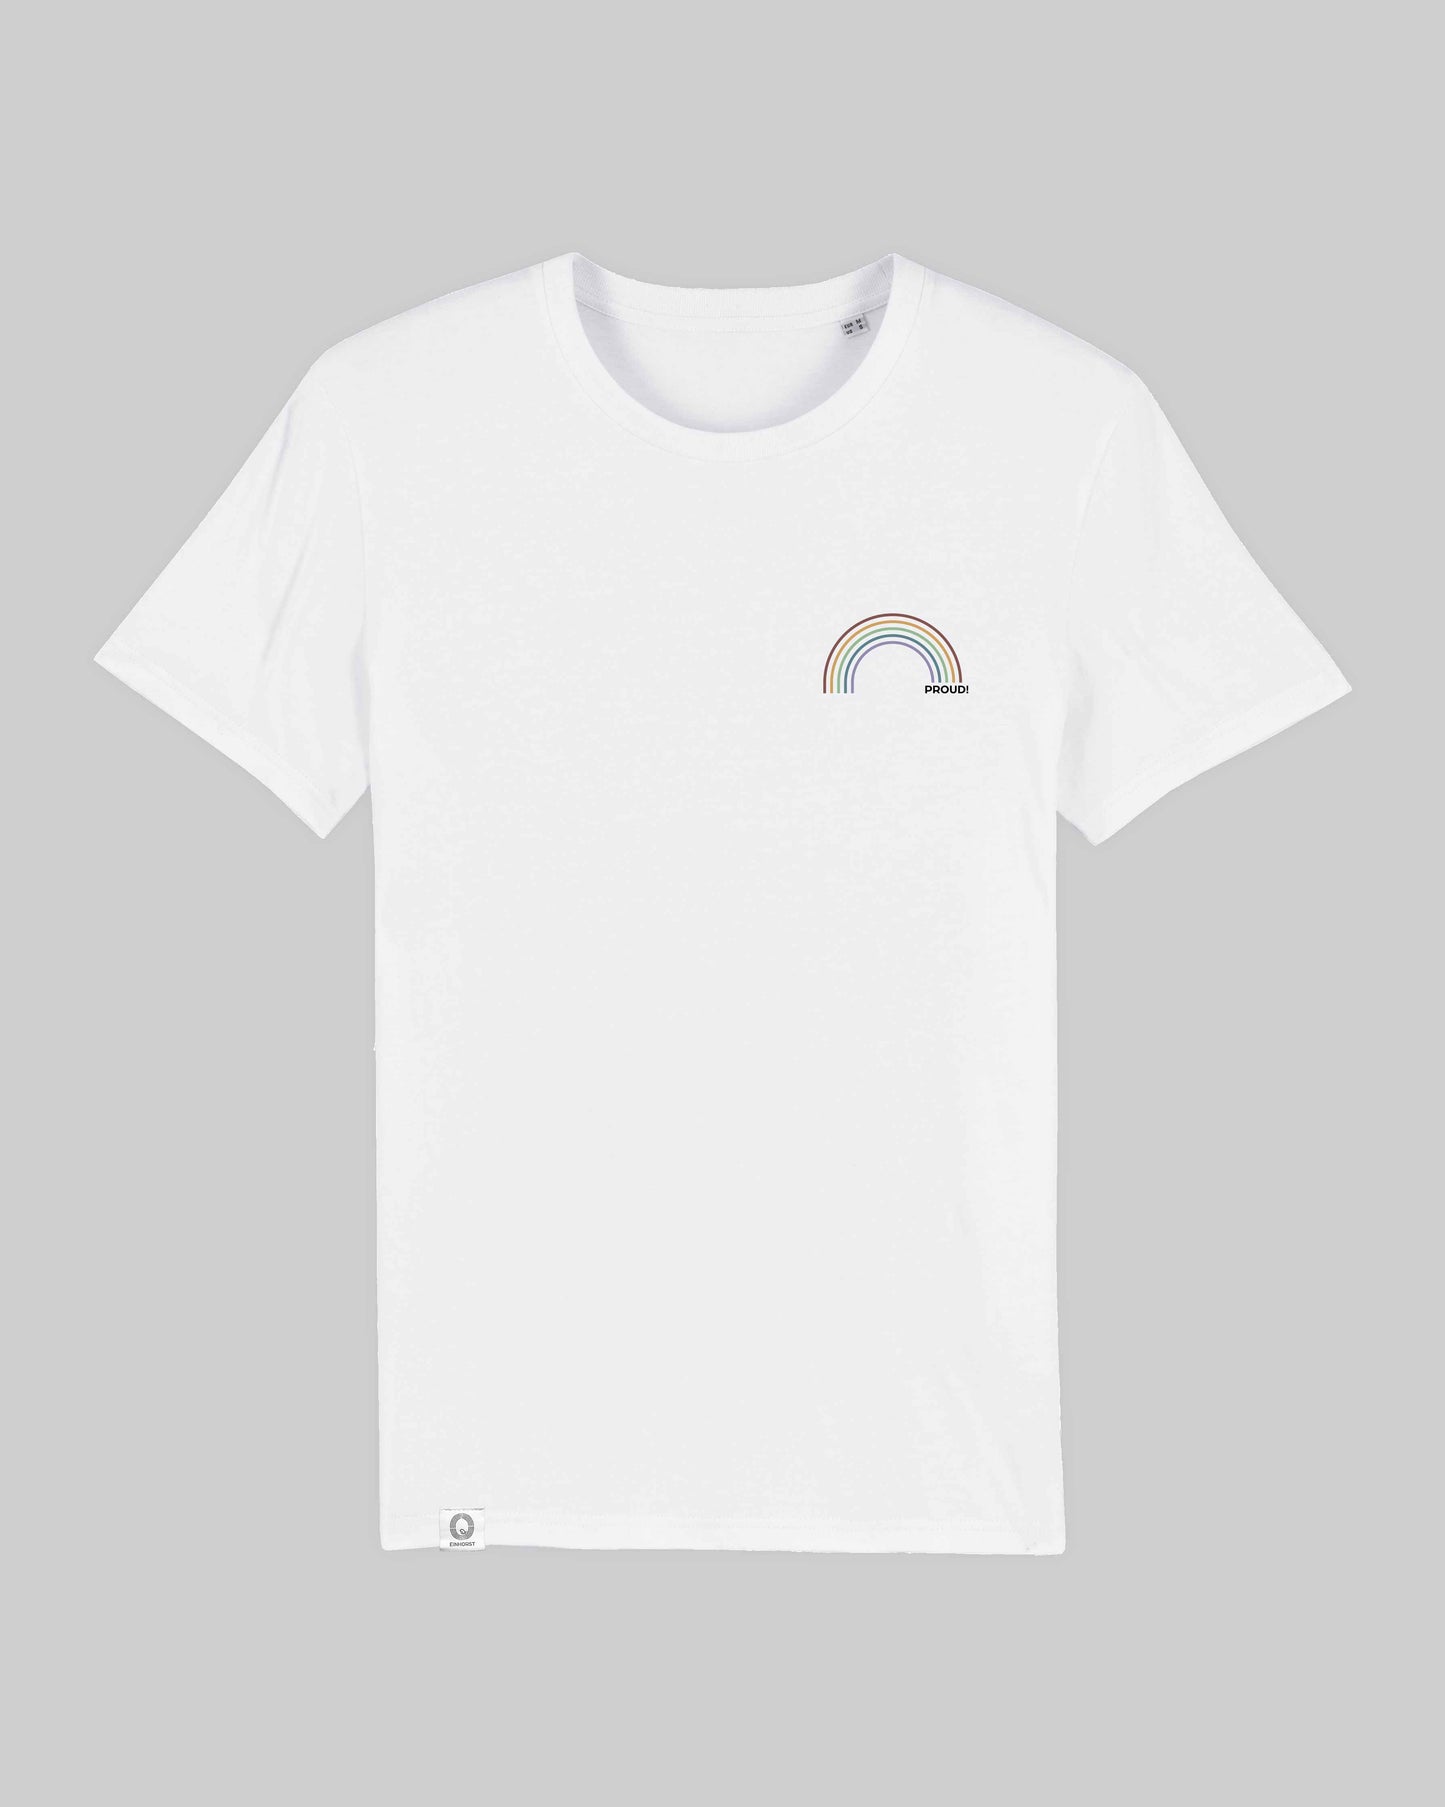 EINHORST® unisex Organic Shirt in Weiß mit dem Motiv "proud Regenbogen" in der Kombination bunter Regenbogen mit schwarzer Schrift, Bild von Shirt von vorne